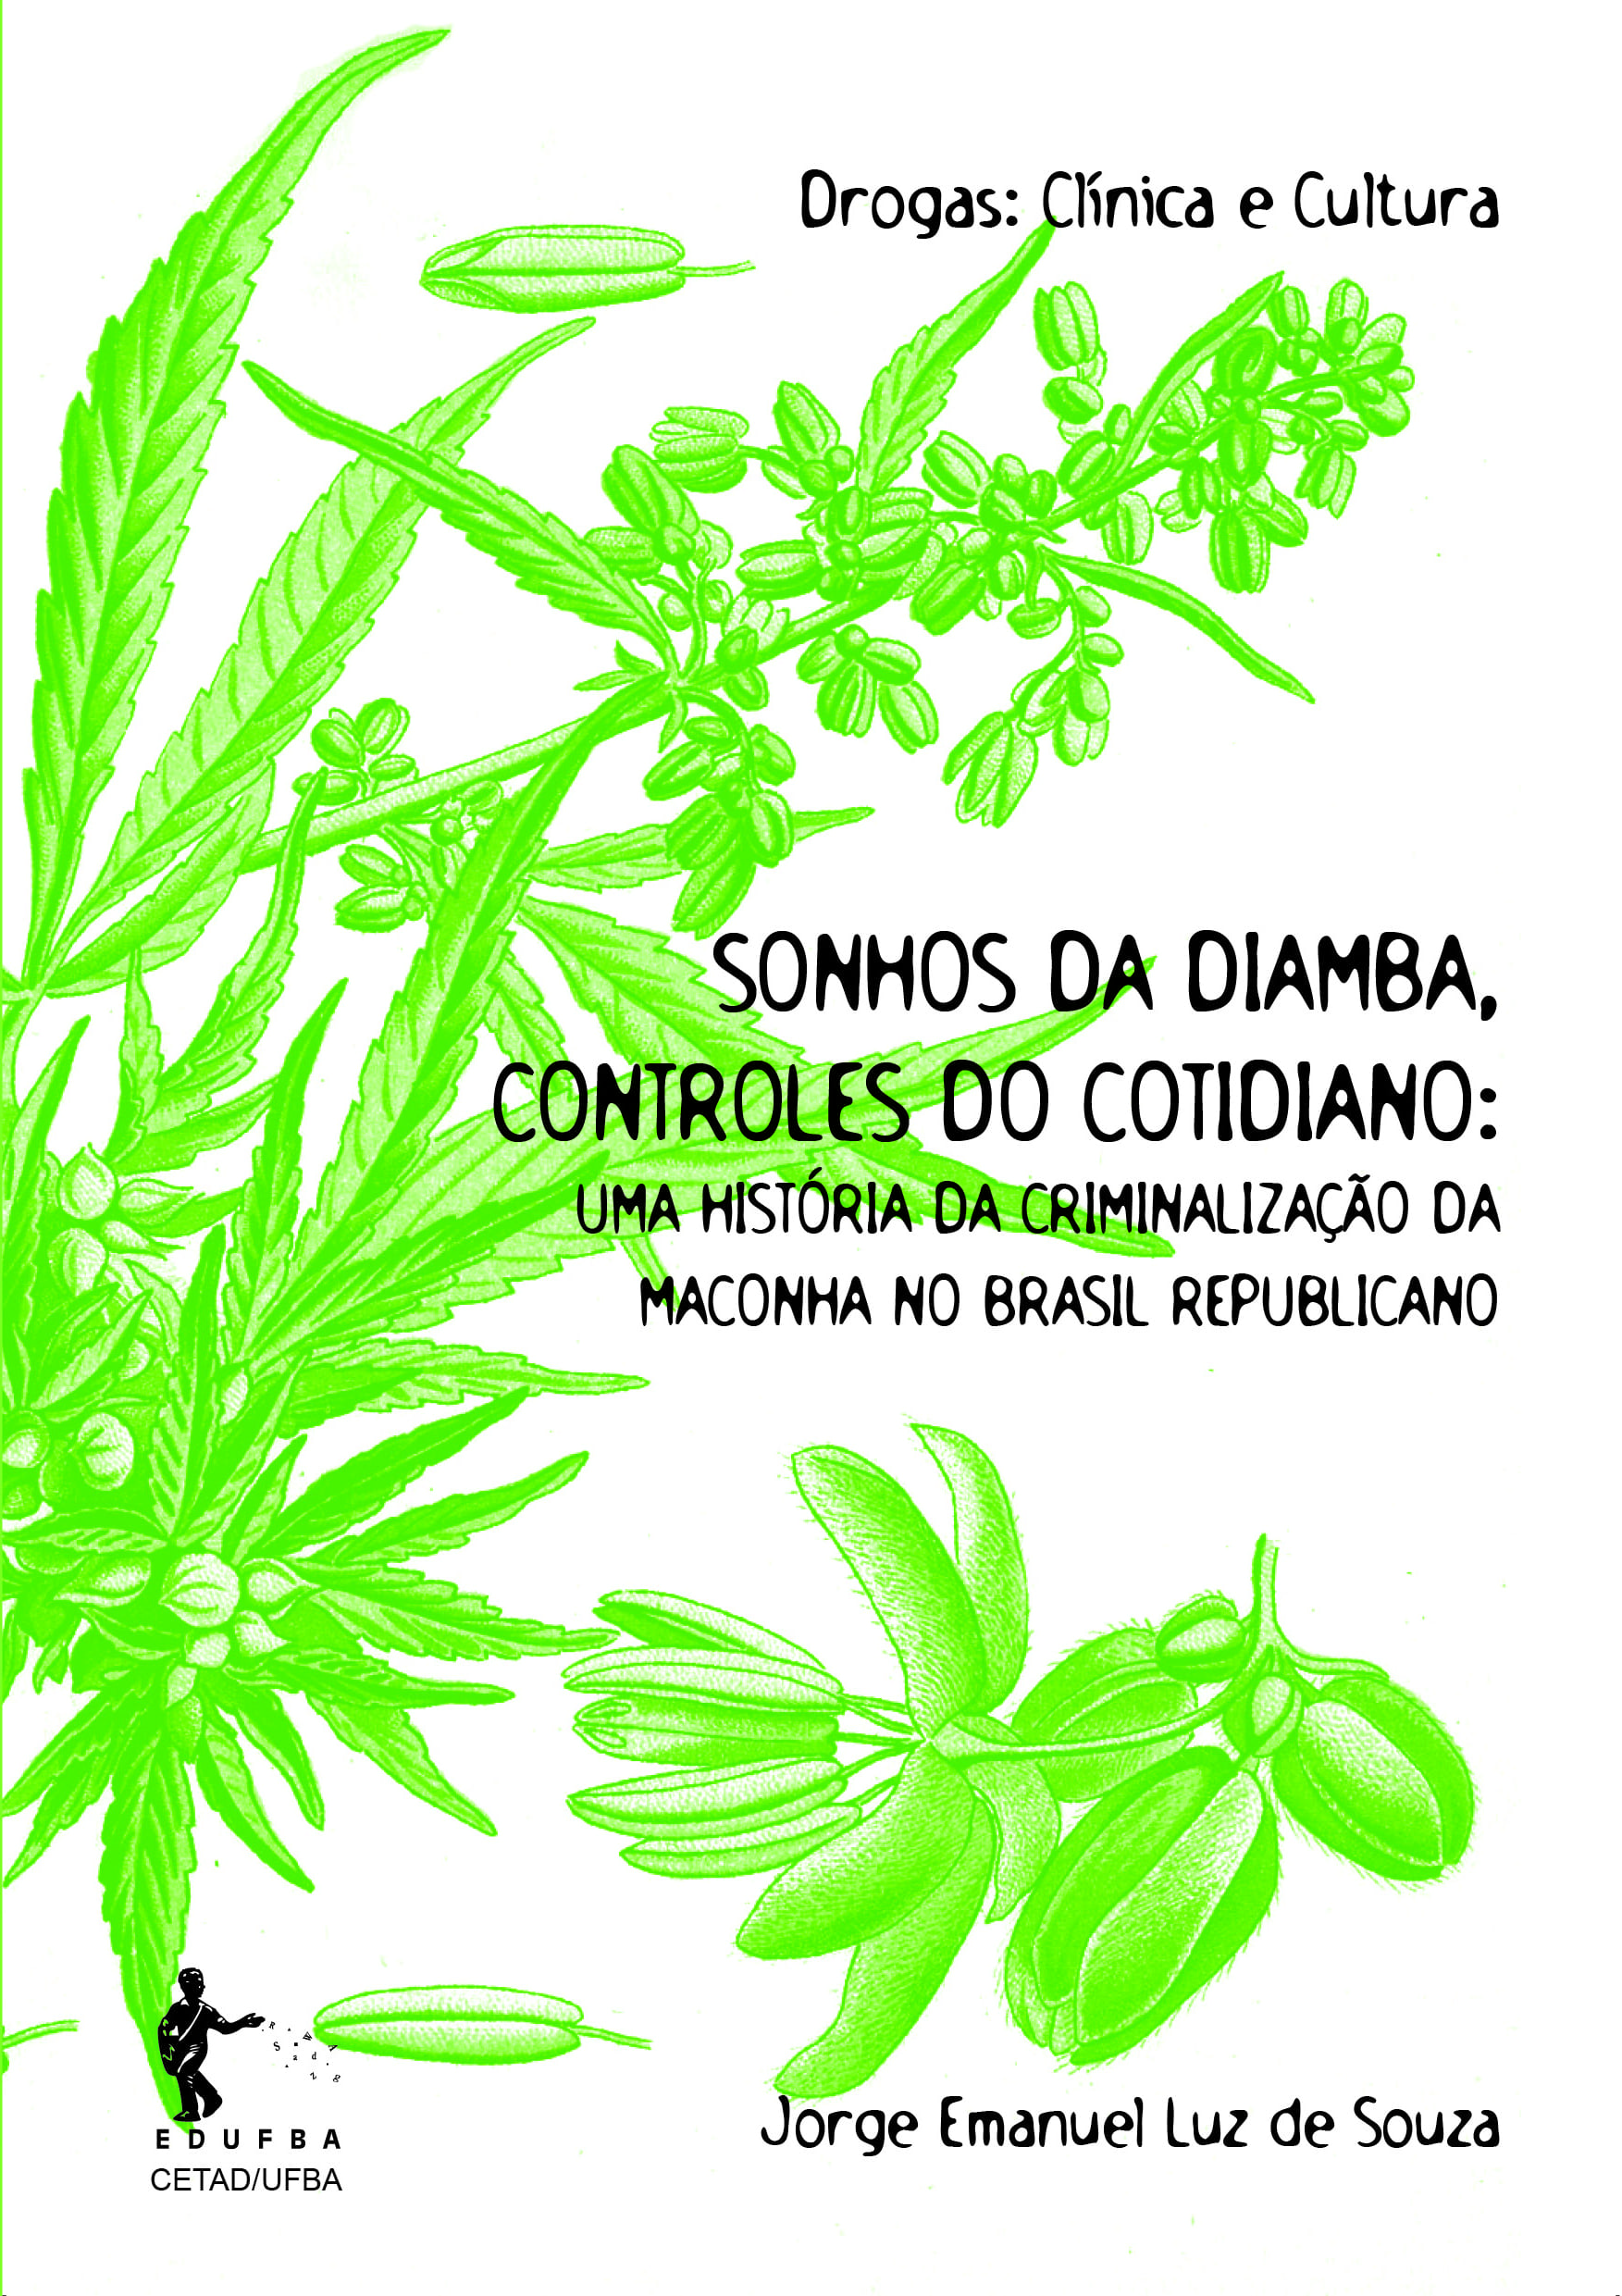 Sonhos da diamba, controles do cotidiano: Uma história da criminalização da maconha no Brasil Republicano